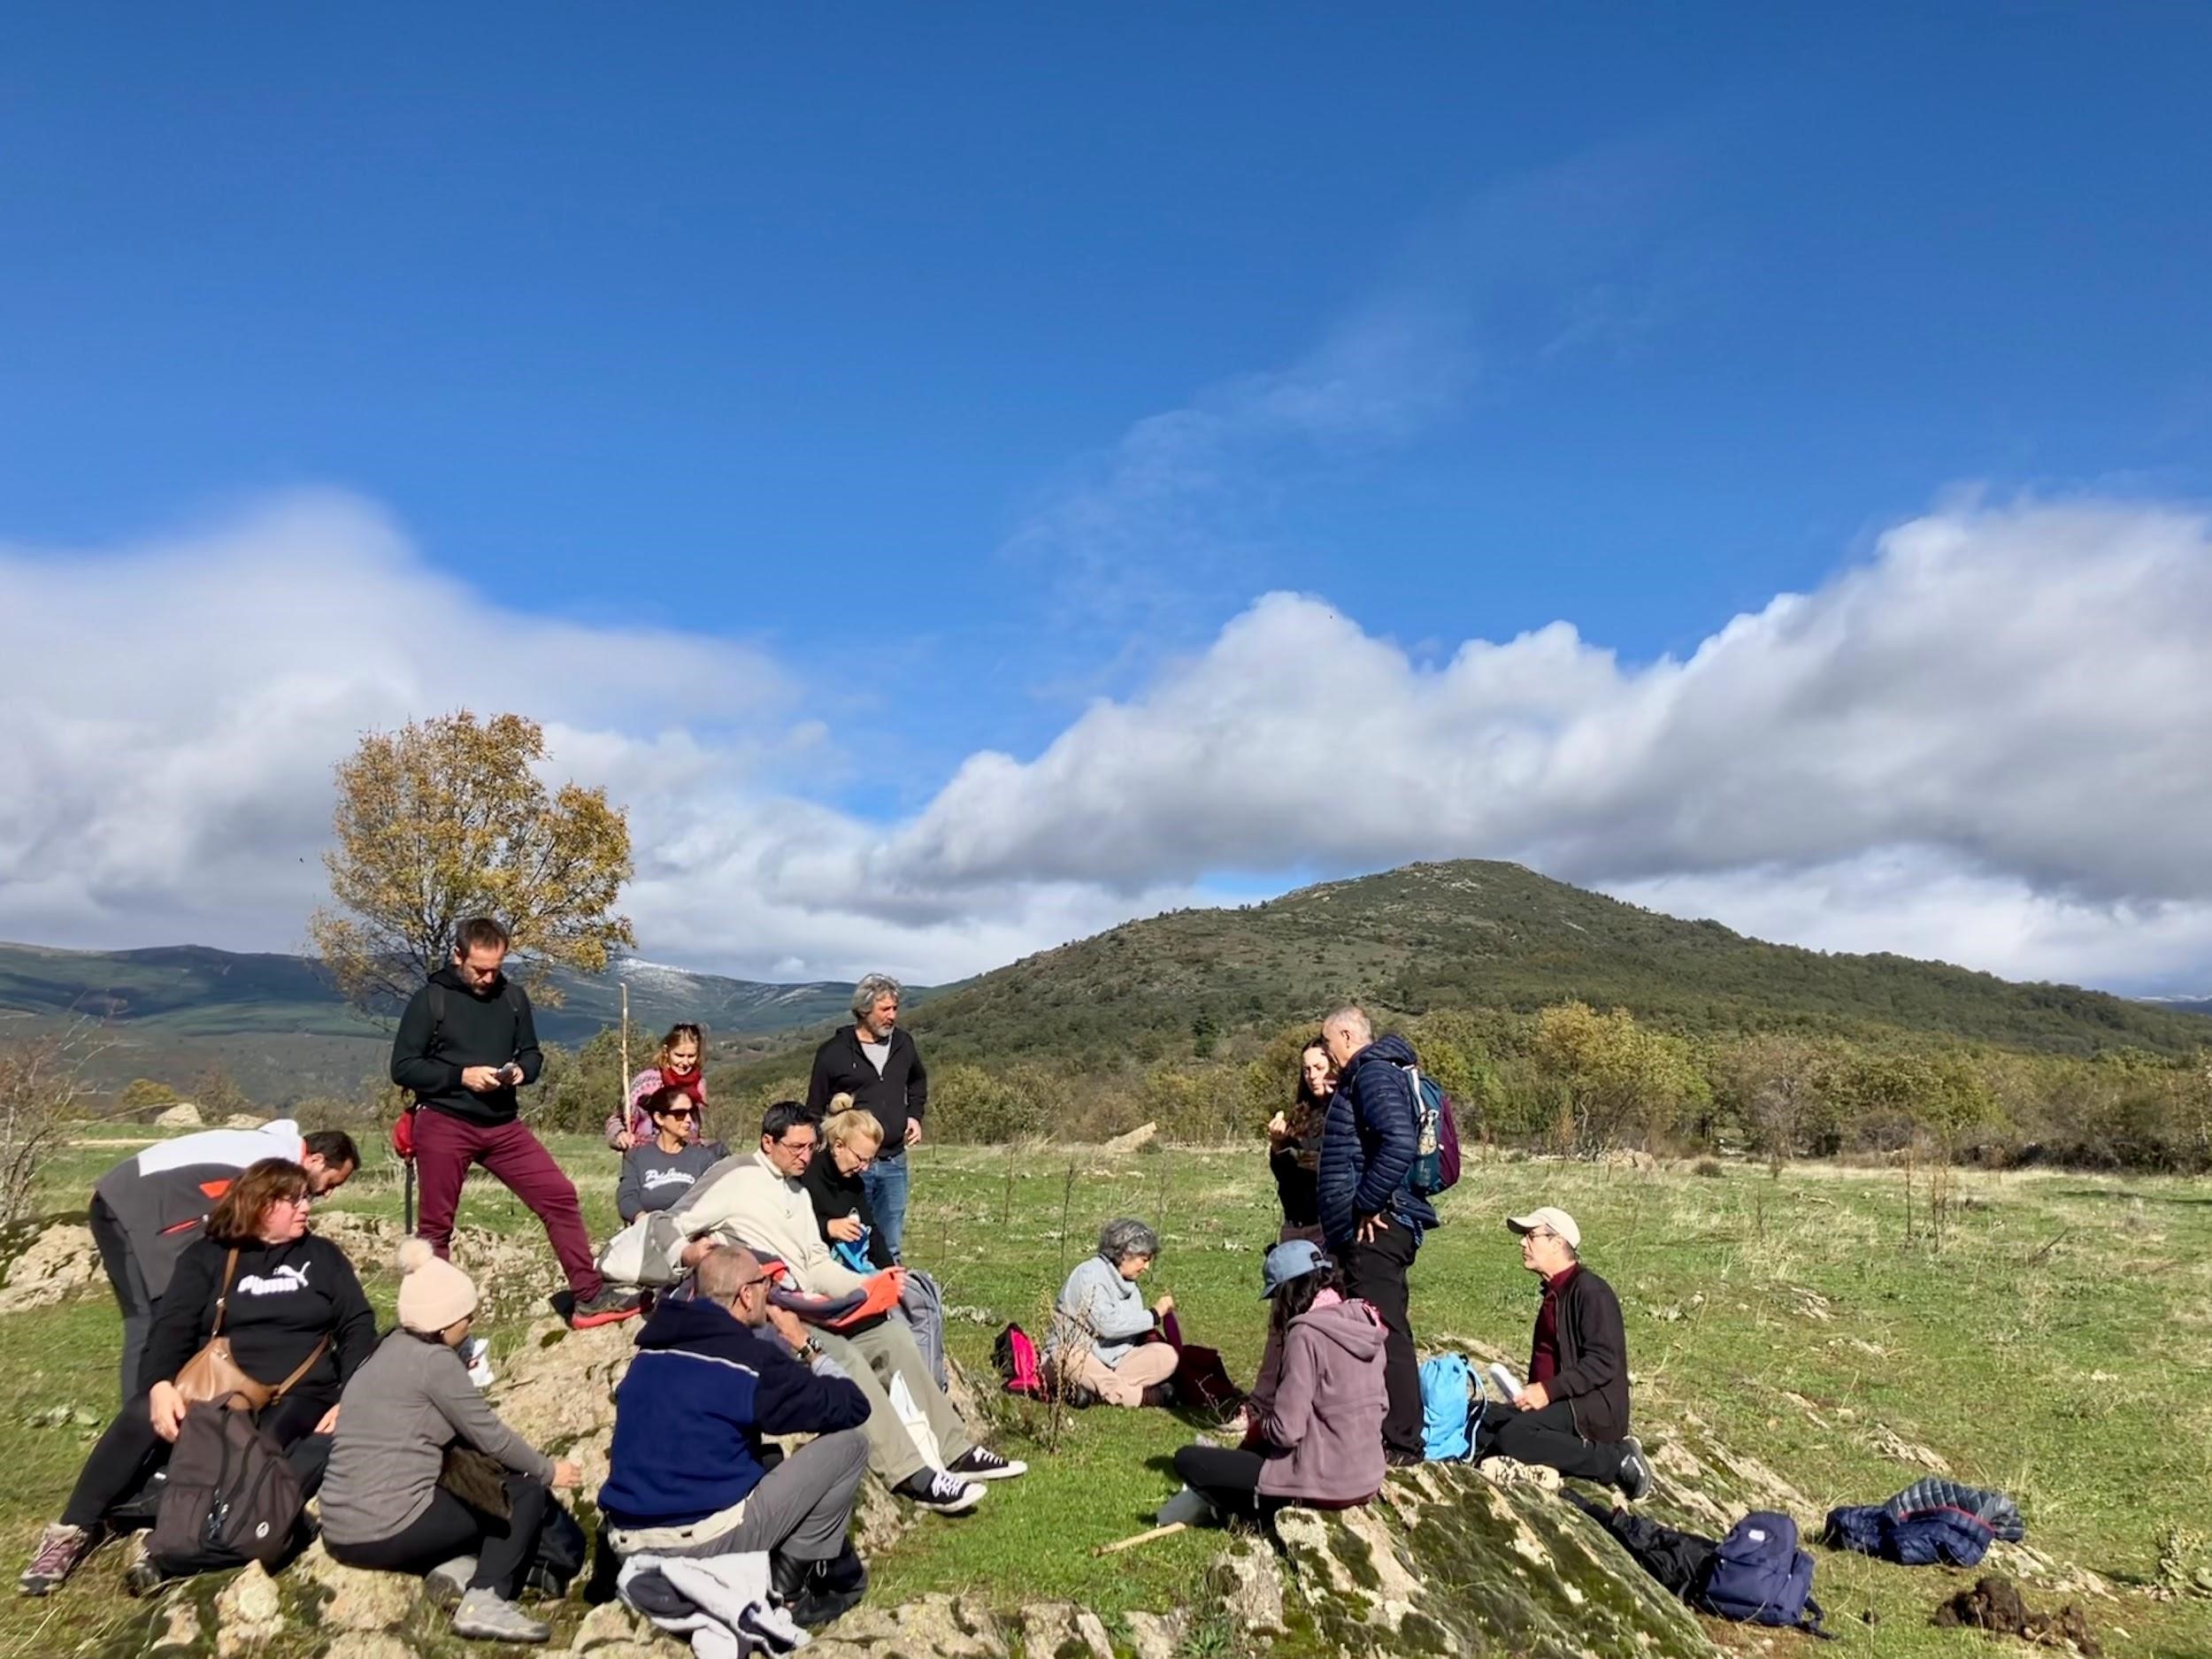 Los participantes en la jornada hacen un alto en el camino mientras escuchan a los investigadores del CCHS-CSIC explicar la historia de la sierra madrileña y su gente. / Jon Gurutz Arranz Izquierdo